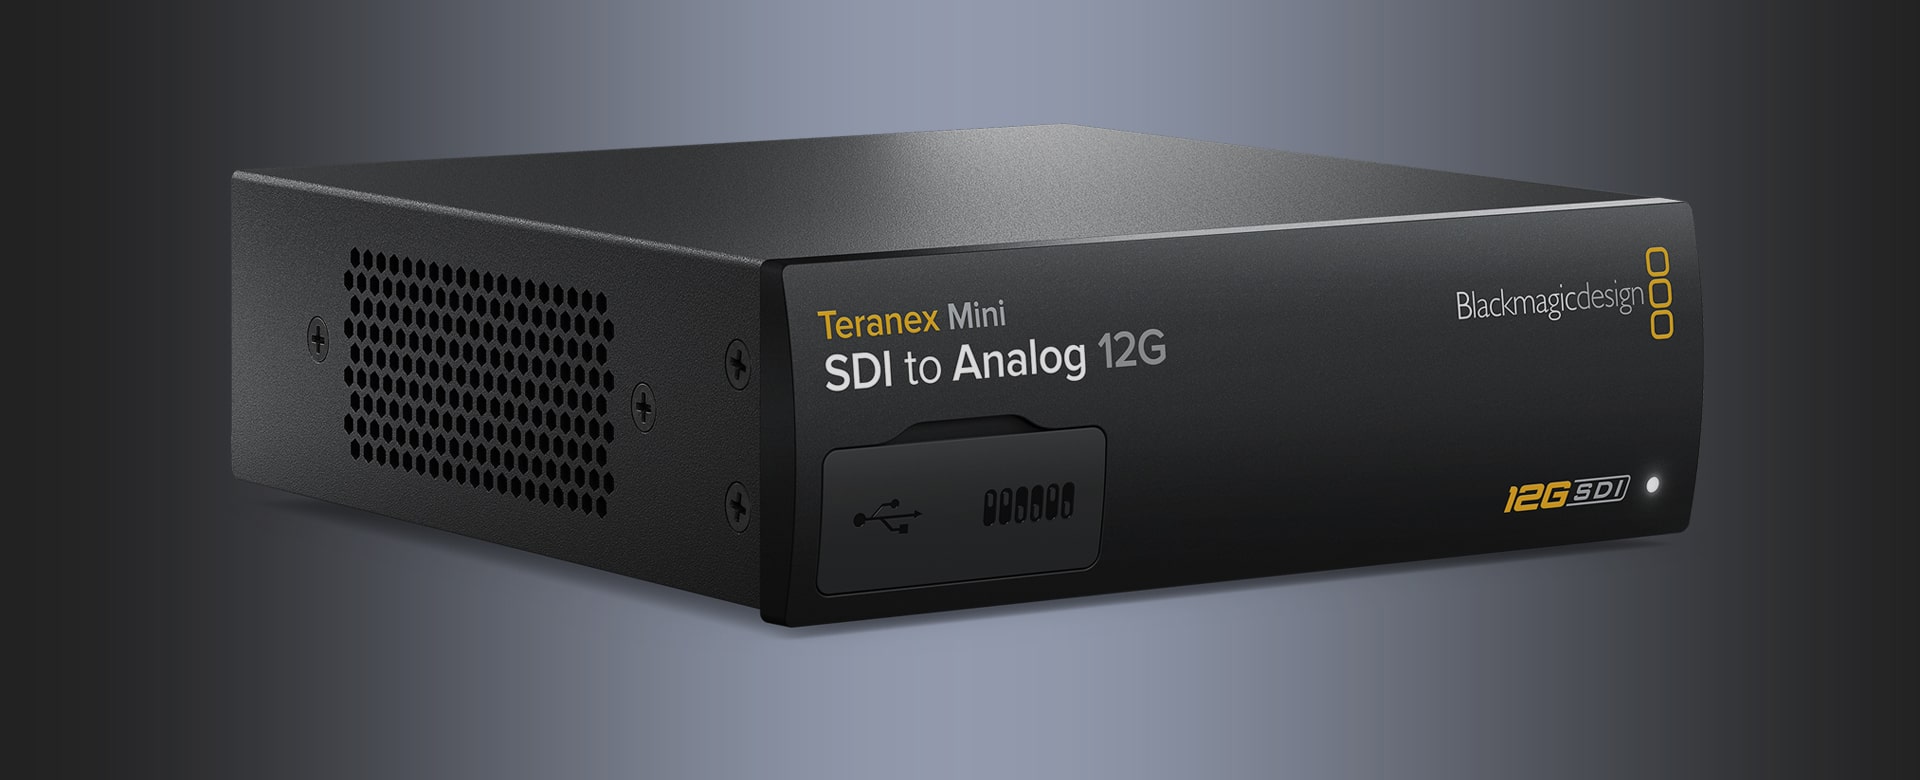 Teranex Mini SDI to Analog 12G